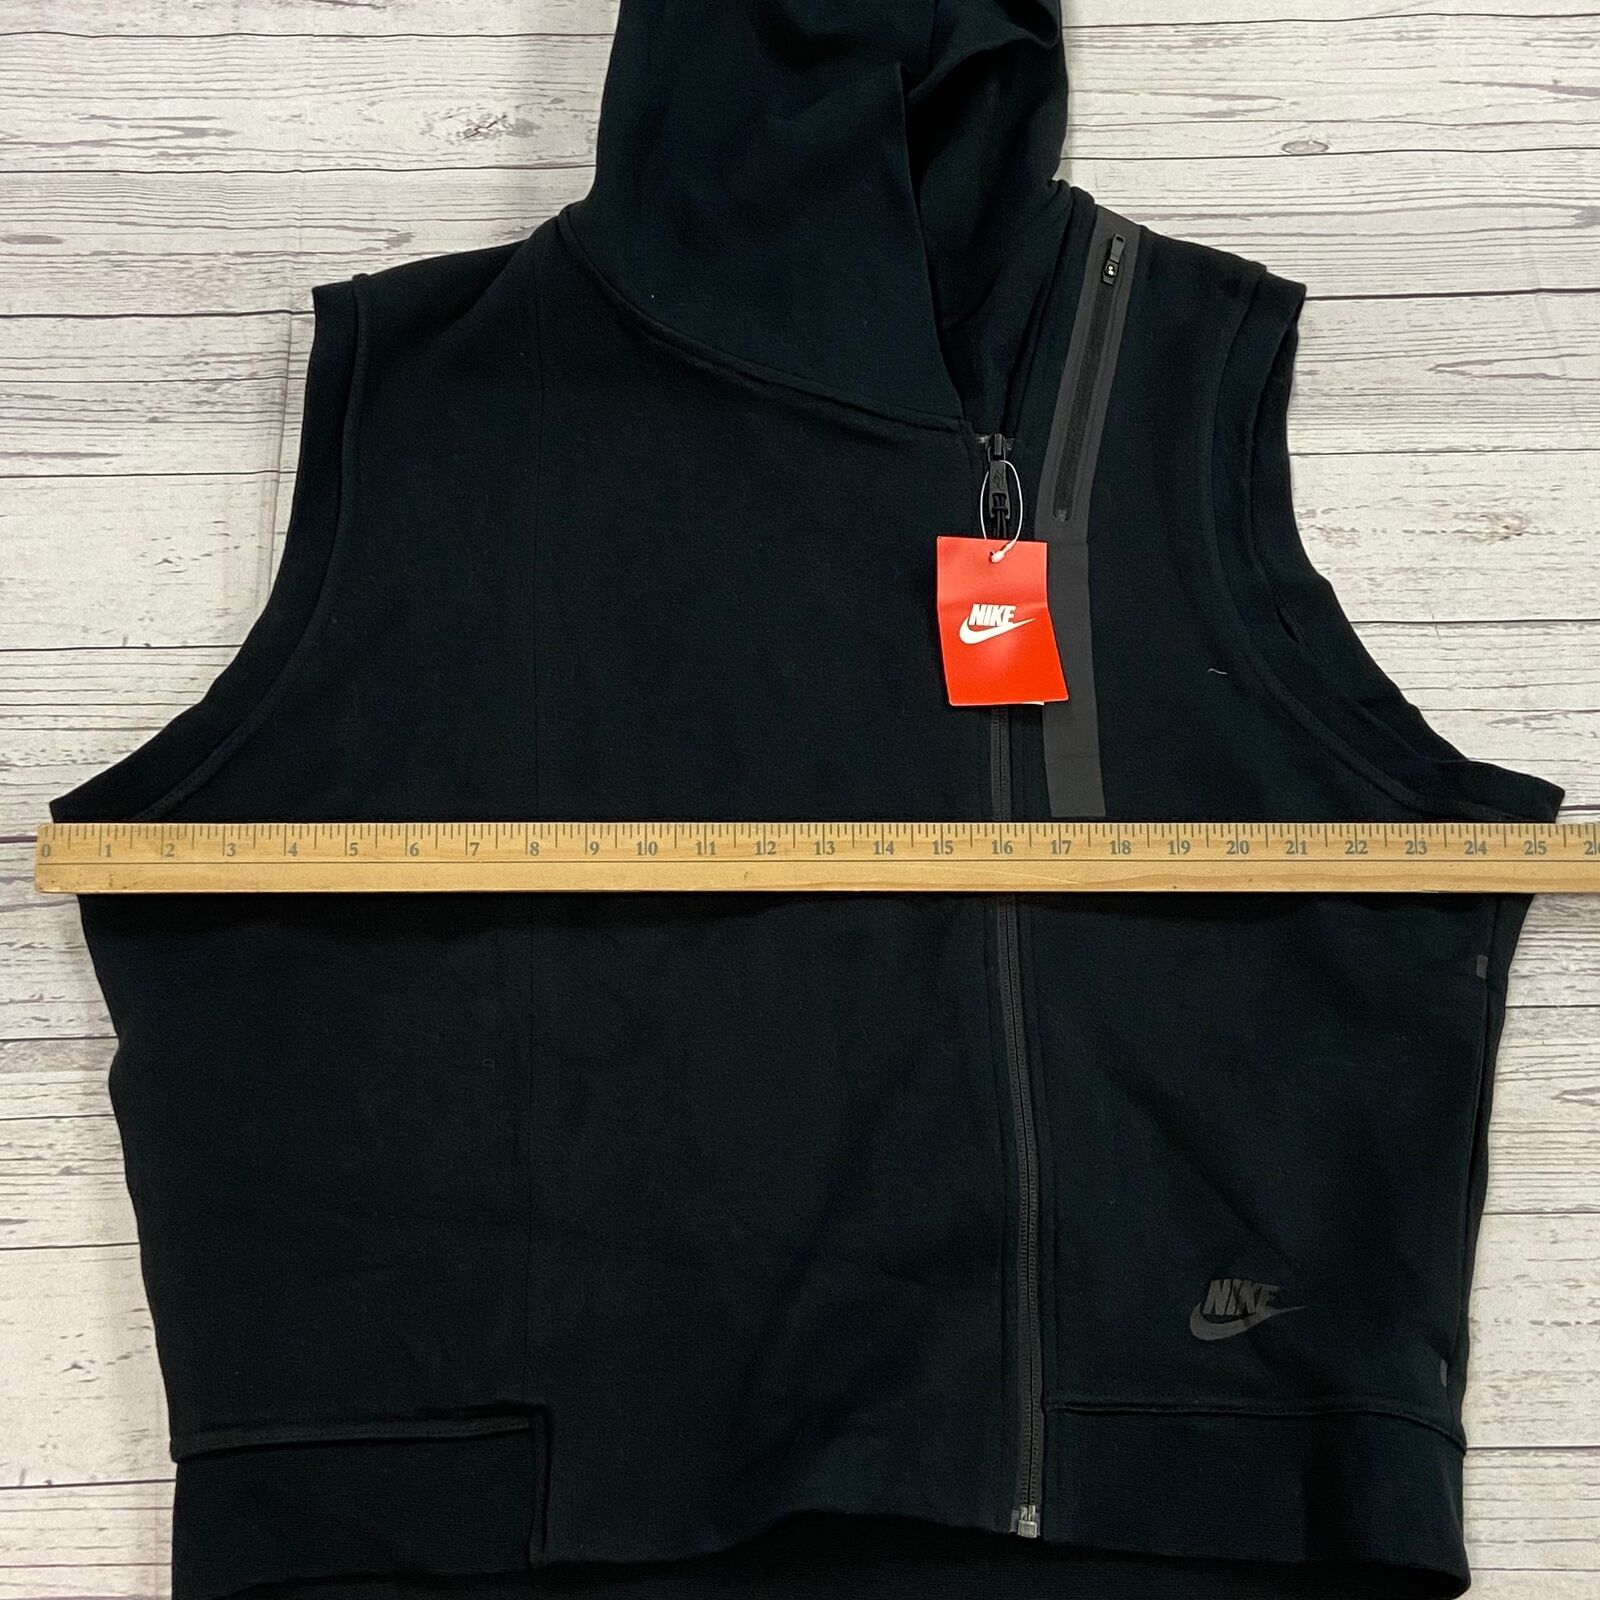 postkantoor amusement schouder Nike Black Off-Center Zip Up Hooded Vest Women Size XL NEW - beyond exchange